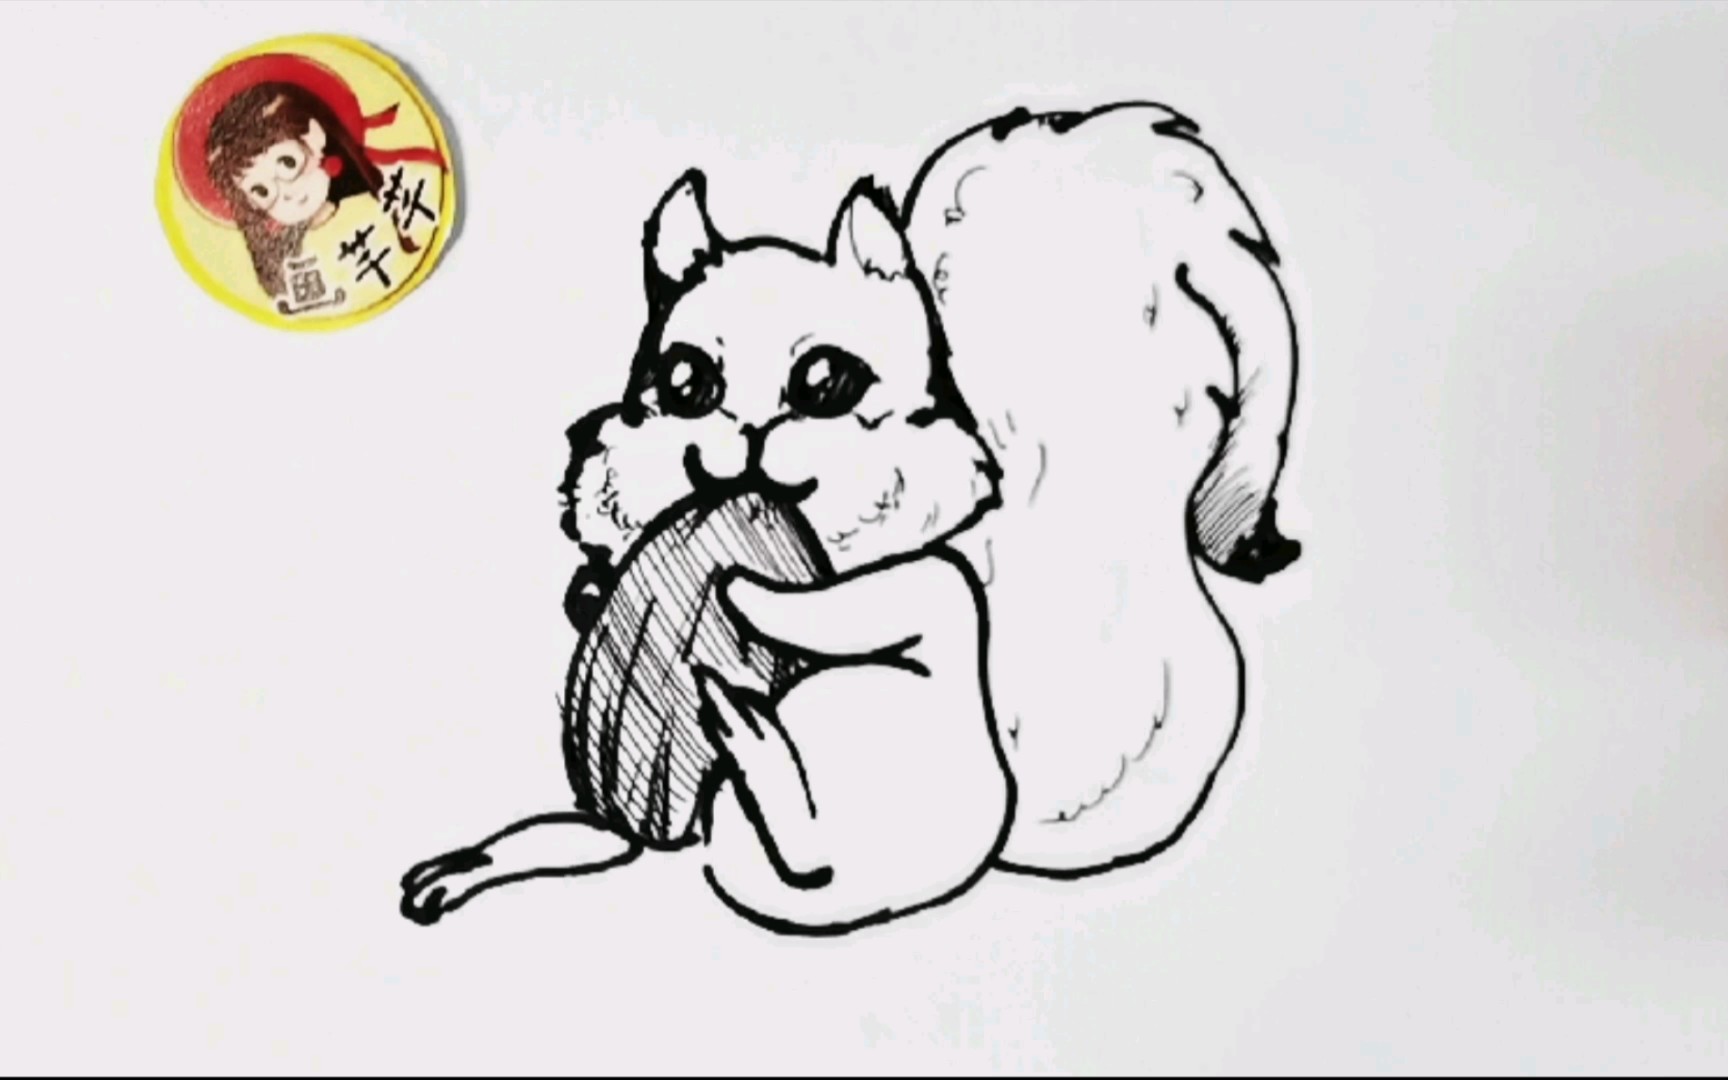 吃瓜子的花栗鼠,卡通简笔画